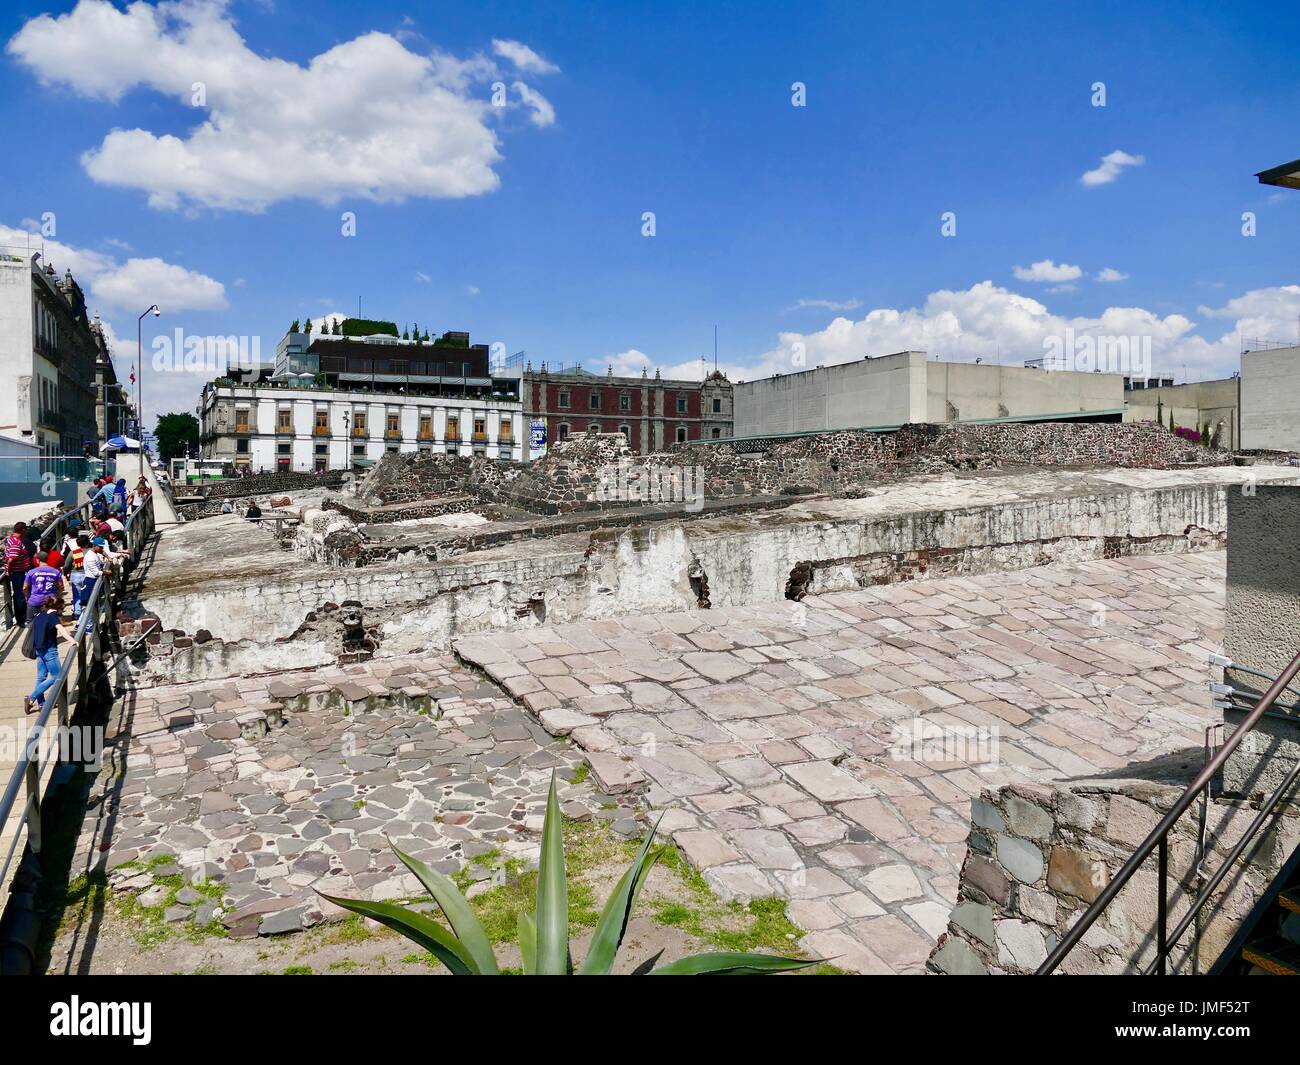 Plus de passerelle croix visiteurs site de fouilles archéologiques temple Aztèque, près de la Place Zocalo, le Centre de la ville de Mexico, Mexique. Banque D'Images